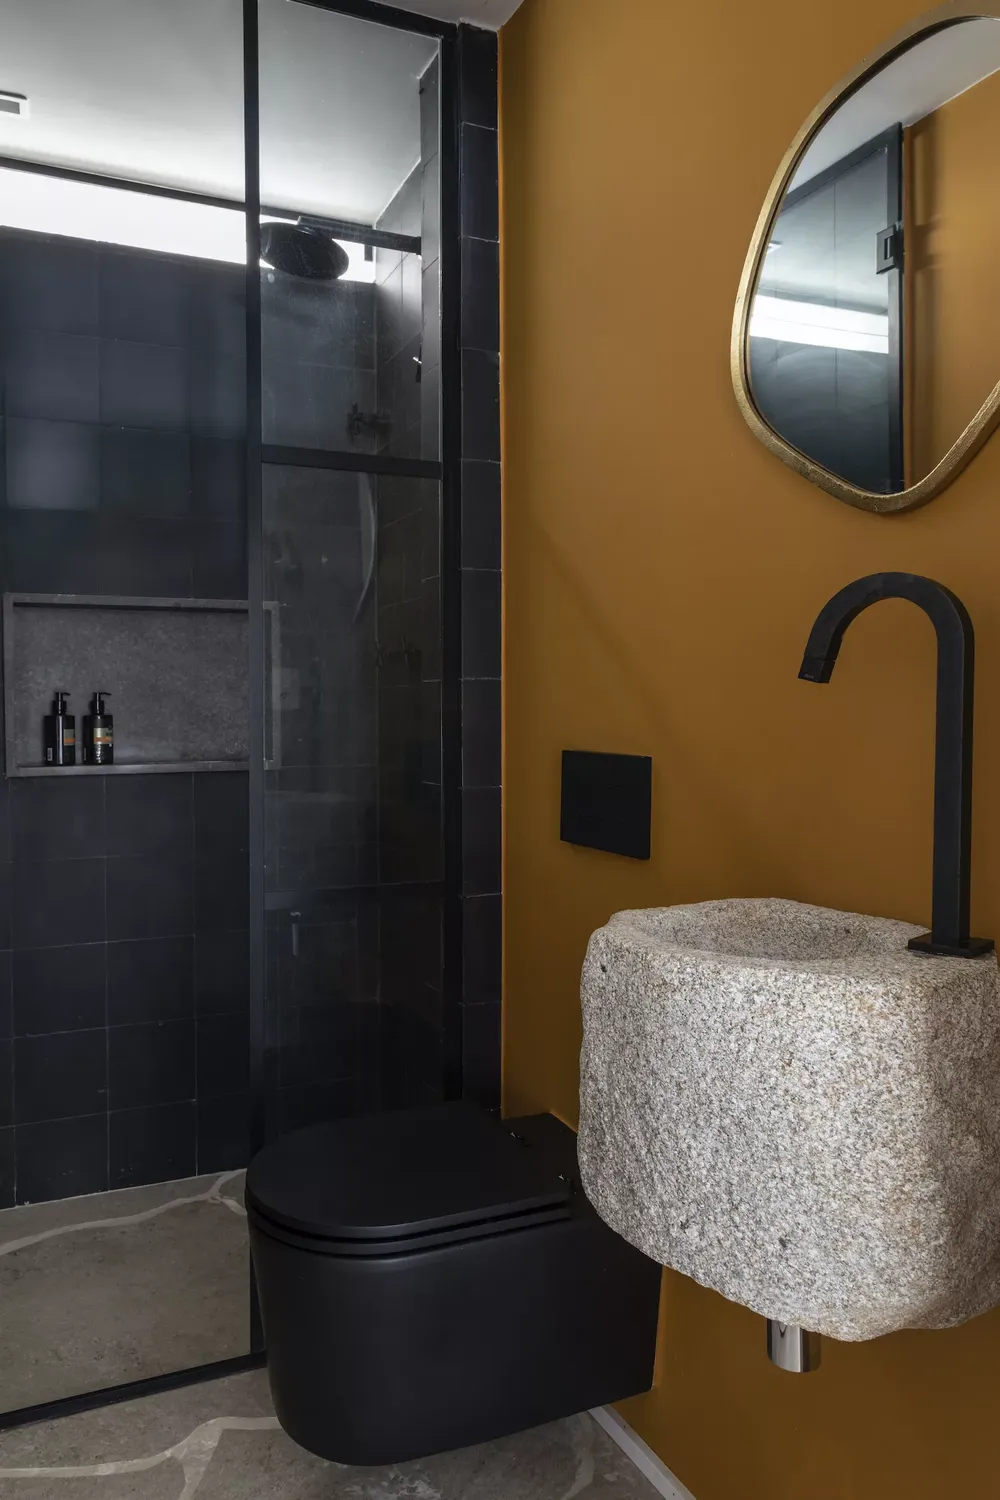 Banheiro com revestimento do box preto, louças pretas, pia de pedra. uma parede principa amarela com espelho organico